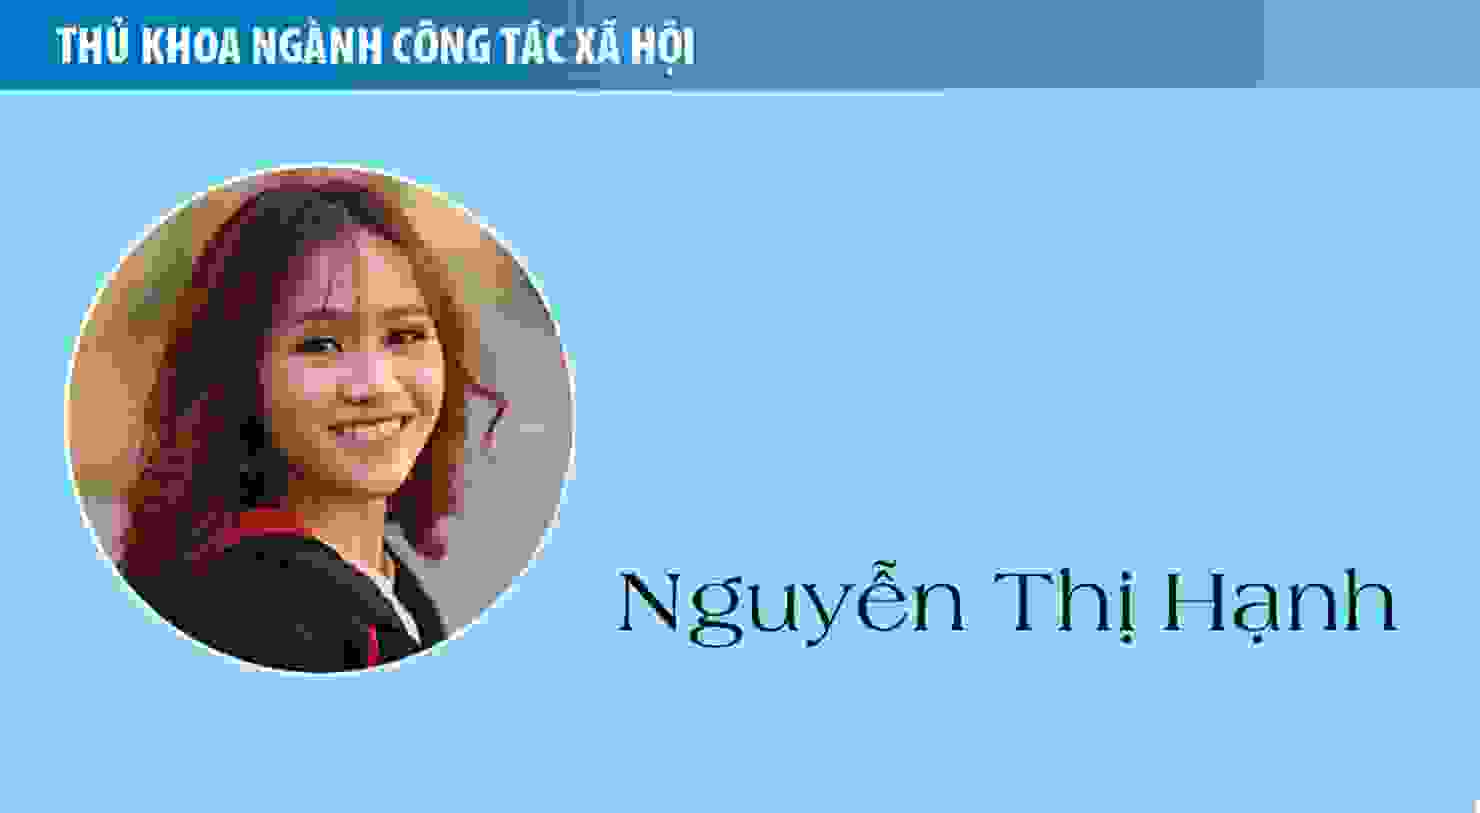 Thủ khoa Nguyễn Thị Hạnh (ngành Công tác xã hội): Sống có ích và biết yêu thương